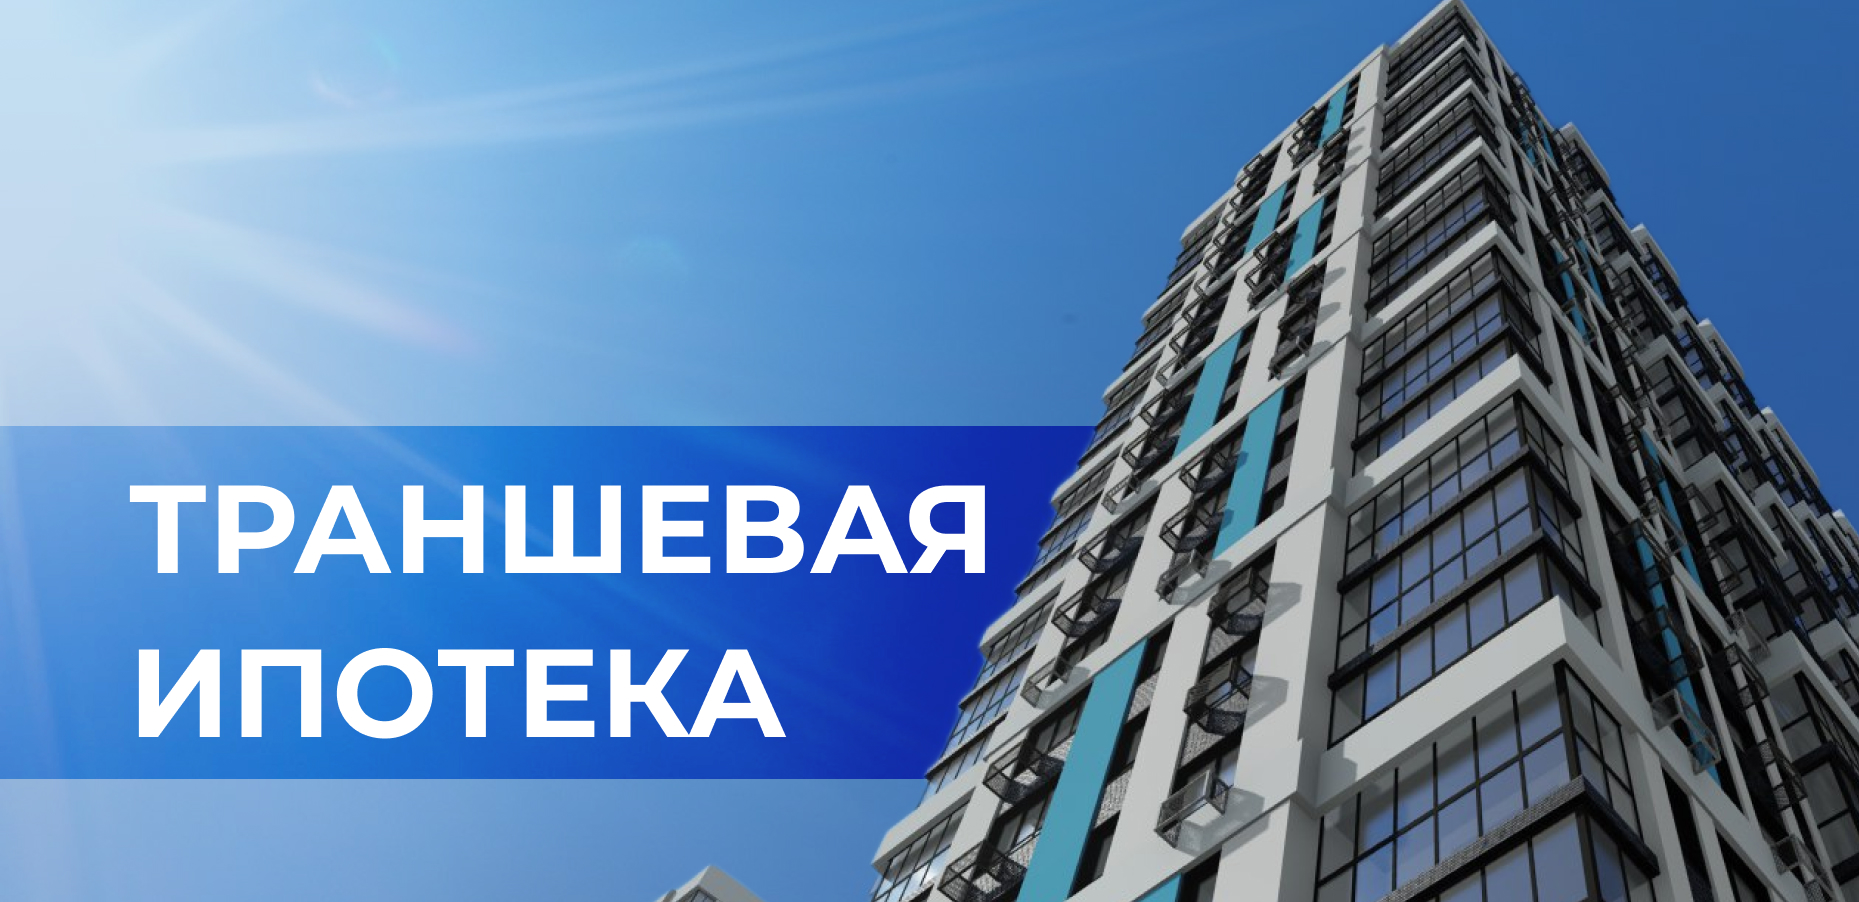 Траншевая ипотека, сэкономьте до 50% на платежах при покупке квартиры в  ЖК "Текучев"!